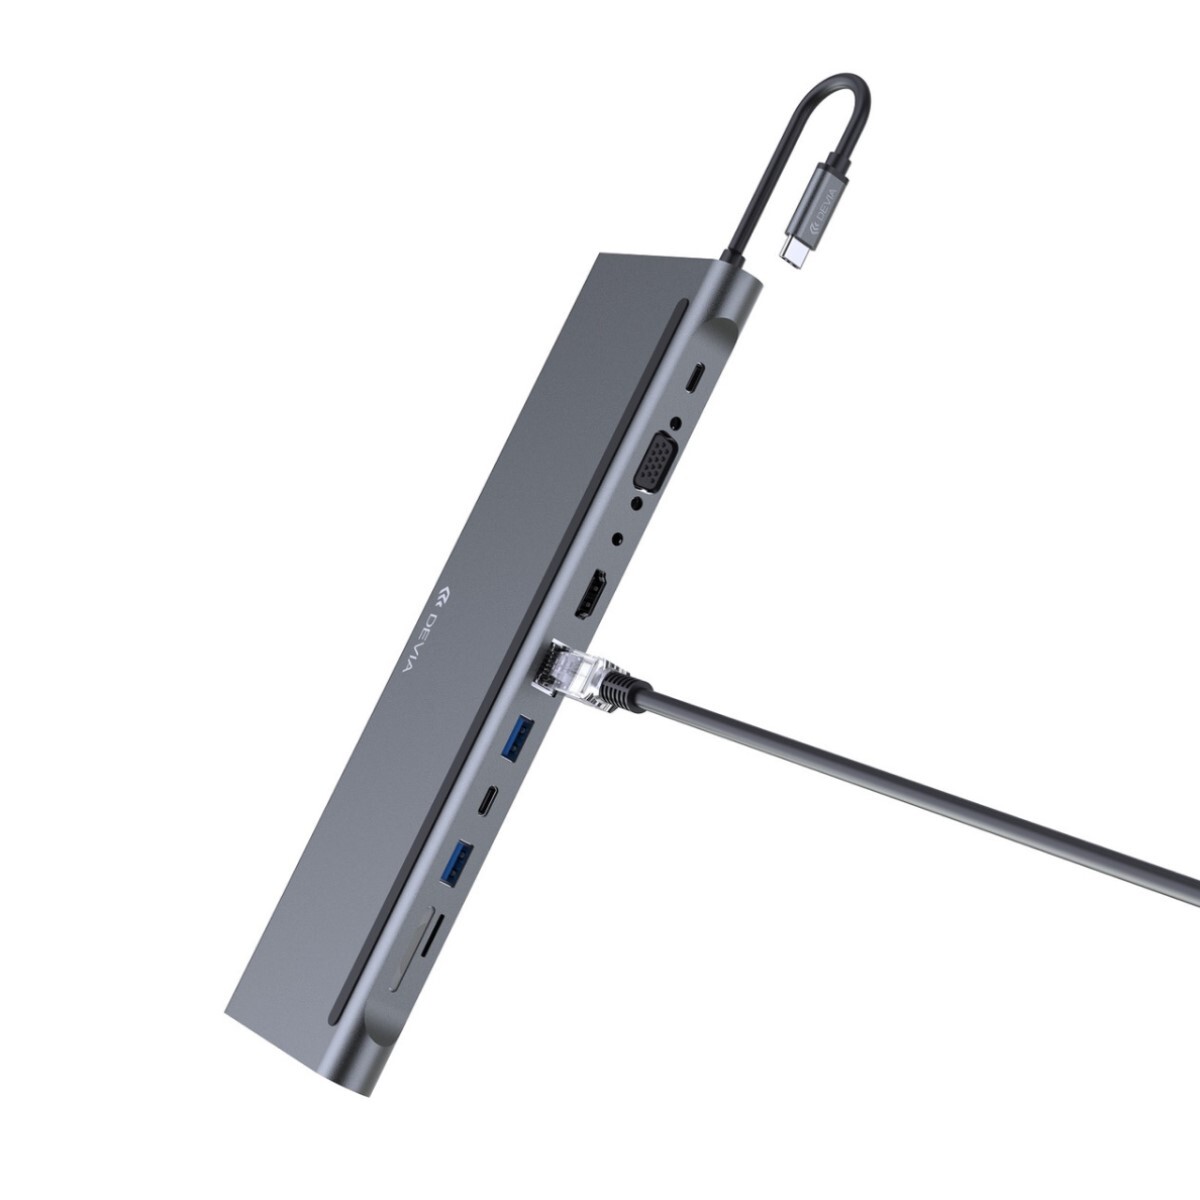 ADAPTADOR HUB USB-C 11 EN 1 LEOPARD SERIES DEVIA Plateado